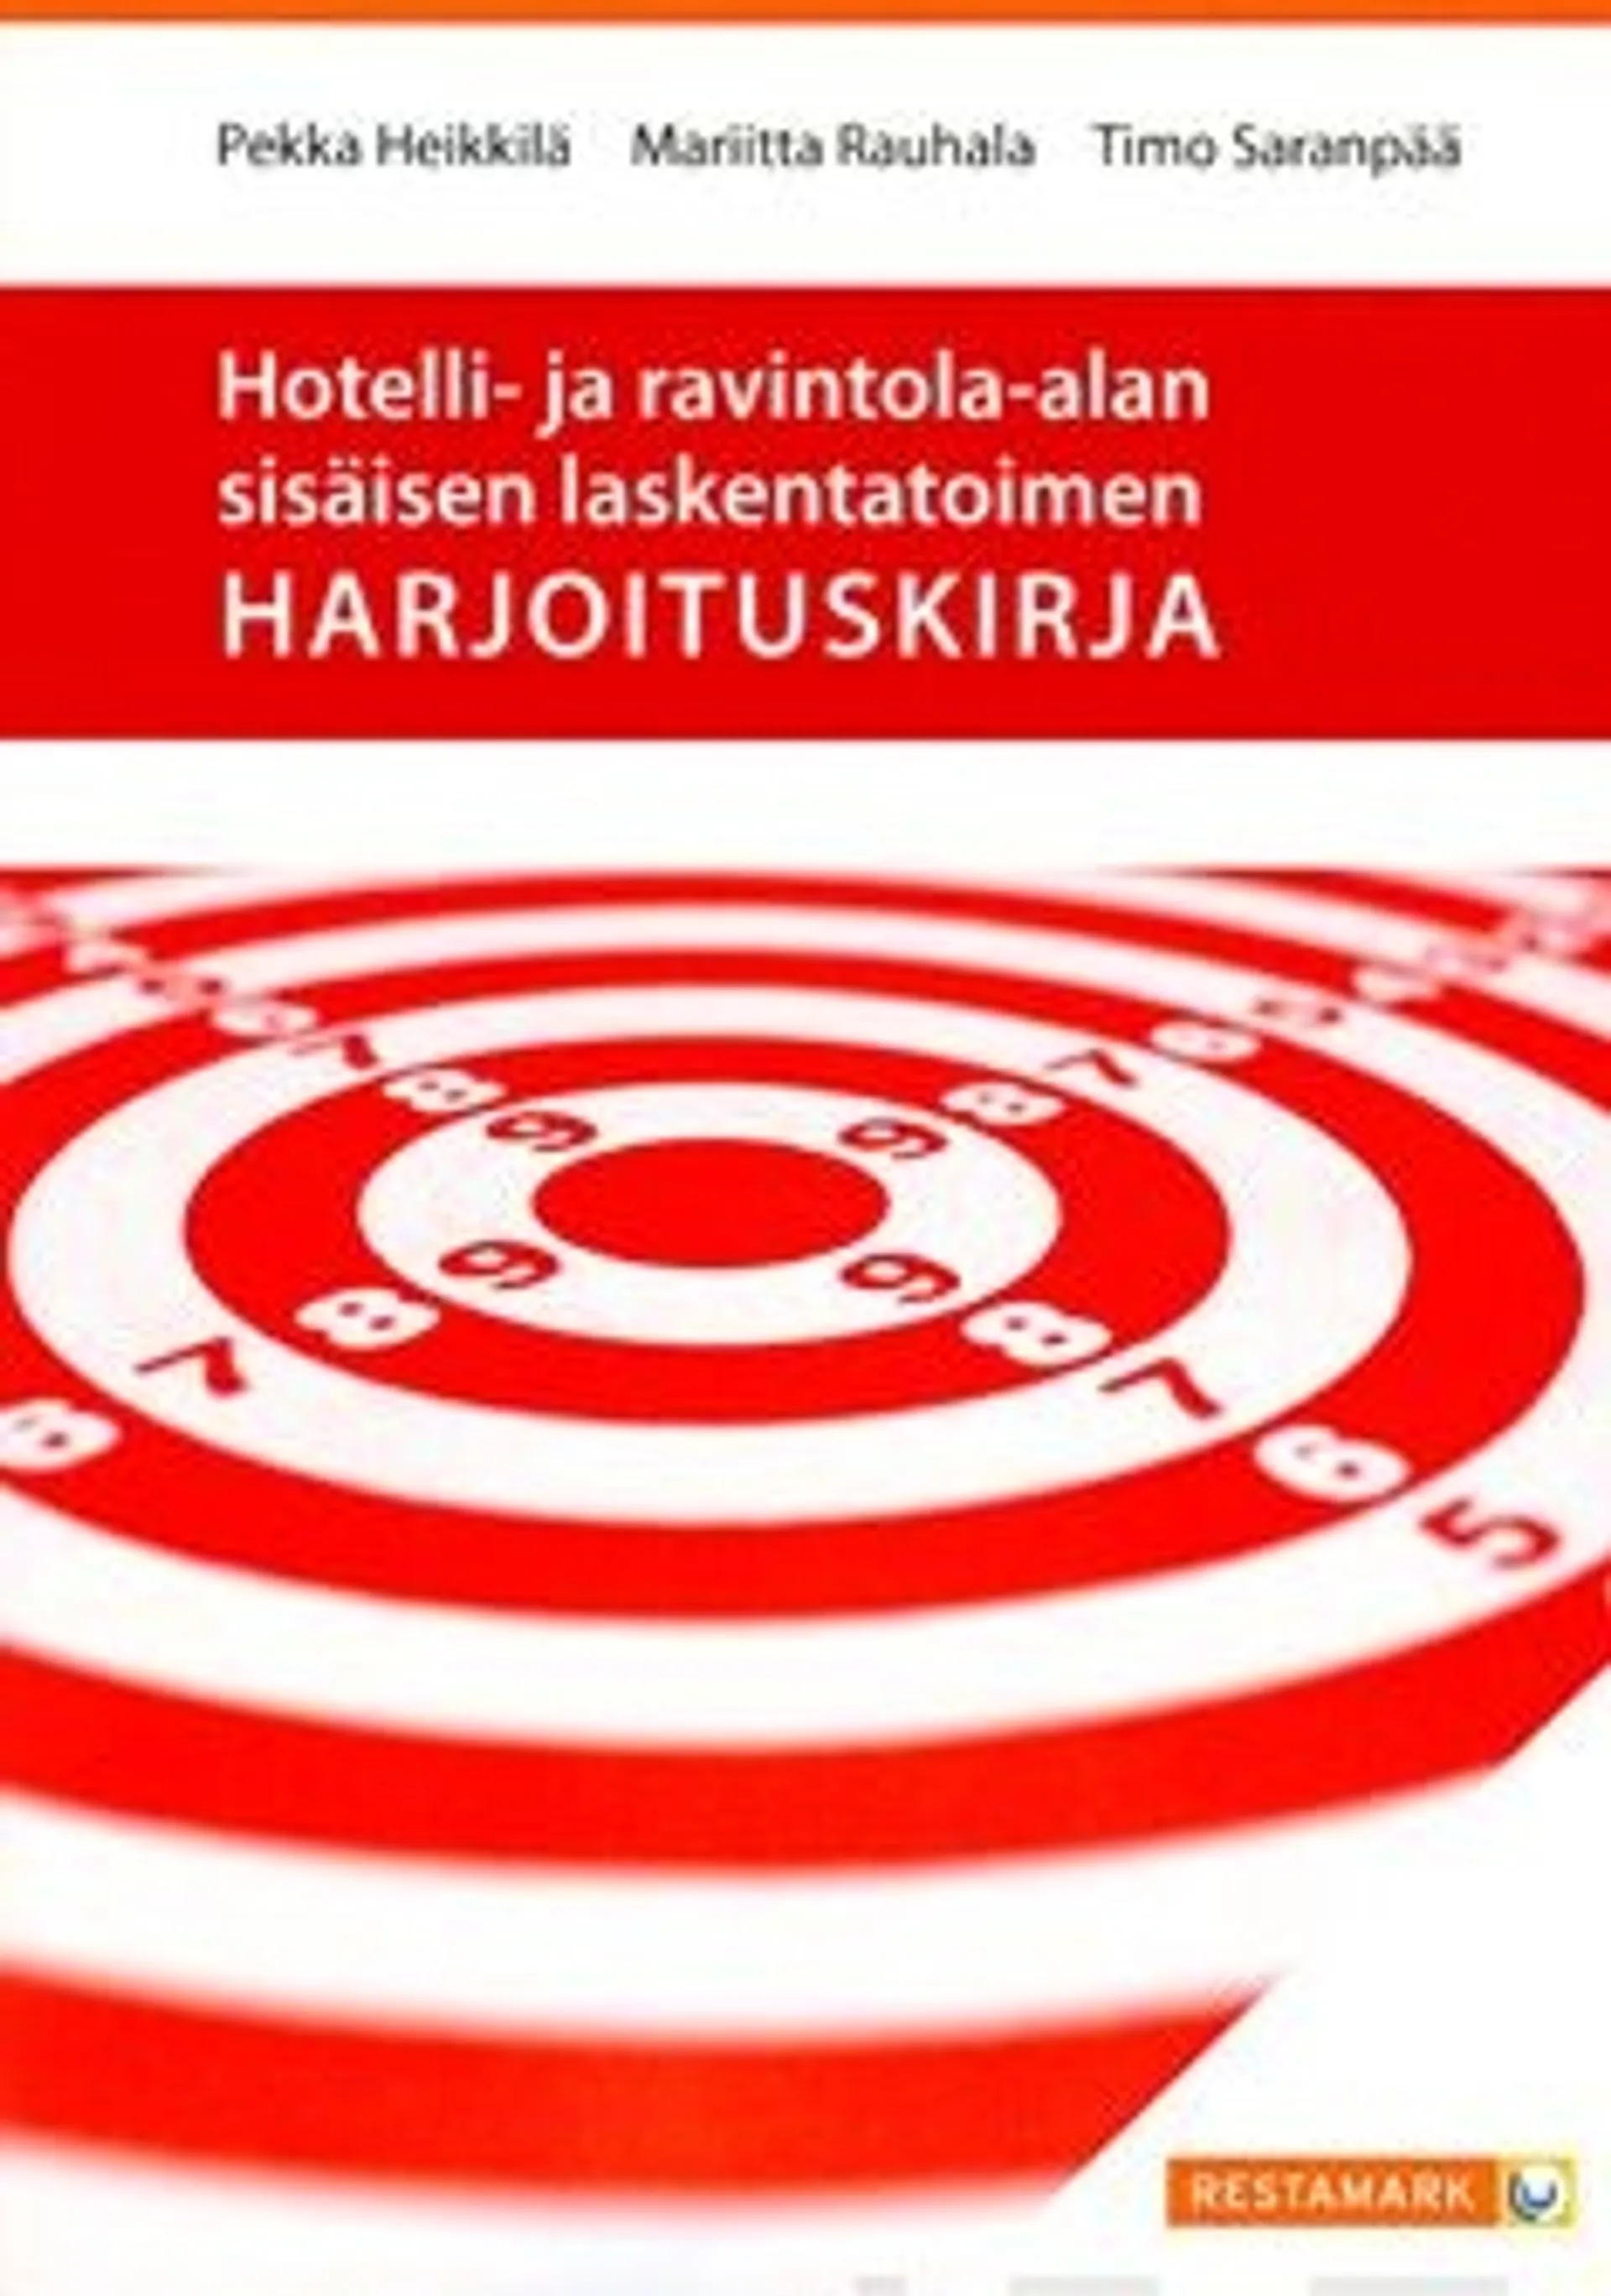 Heikkilä, Hotelli- ja ravintola-alan sisäisen laskentatoimen harjoituskirja